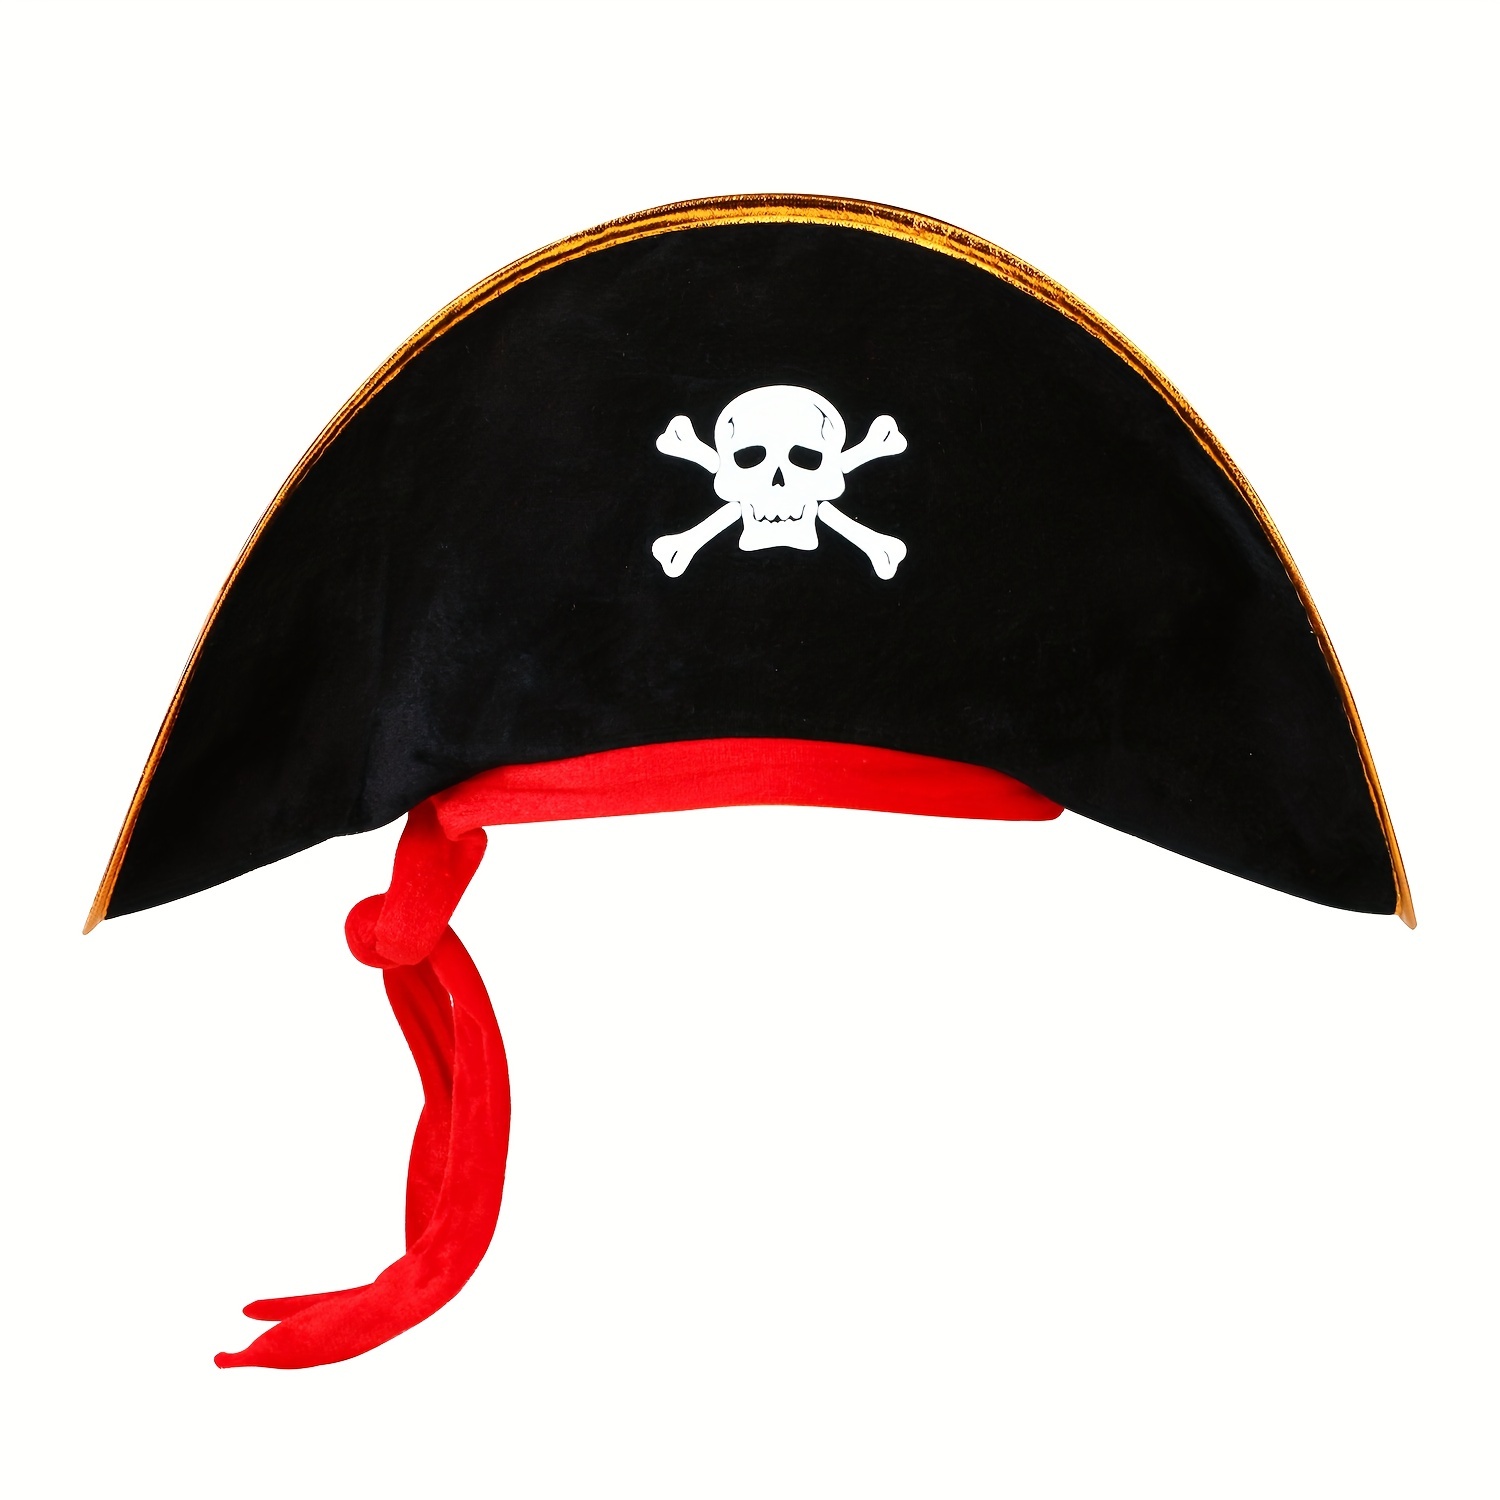 Sombrero Pirata Negro con puntilla adorno > Complementos para Disfraces >  Accesorios para la cabeza Disfraces > Sombreros y Gorras para Disfraces >  Sombreros Históricos para Disfraces > Sombreros Piratas para Disfraces